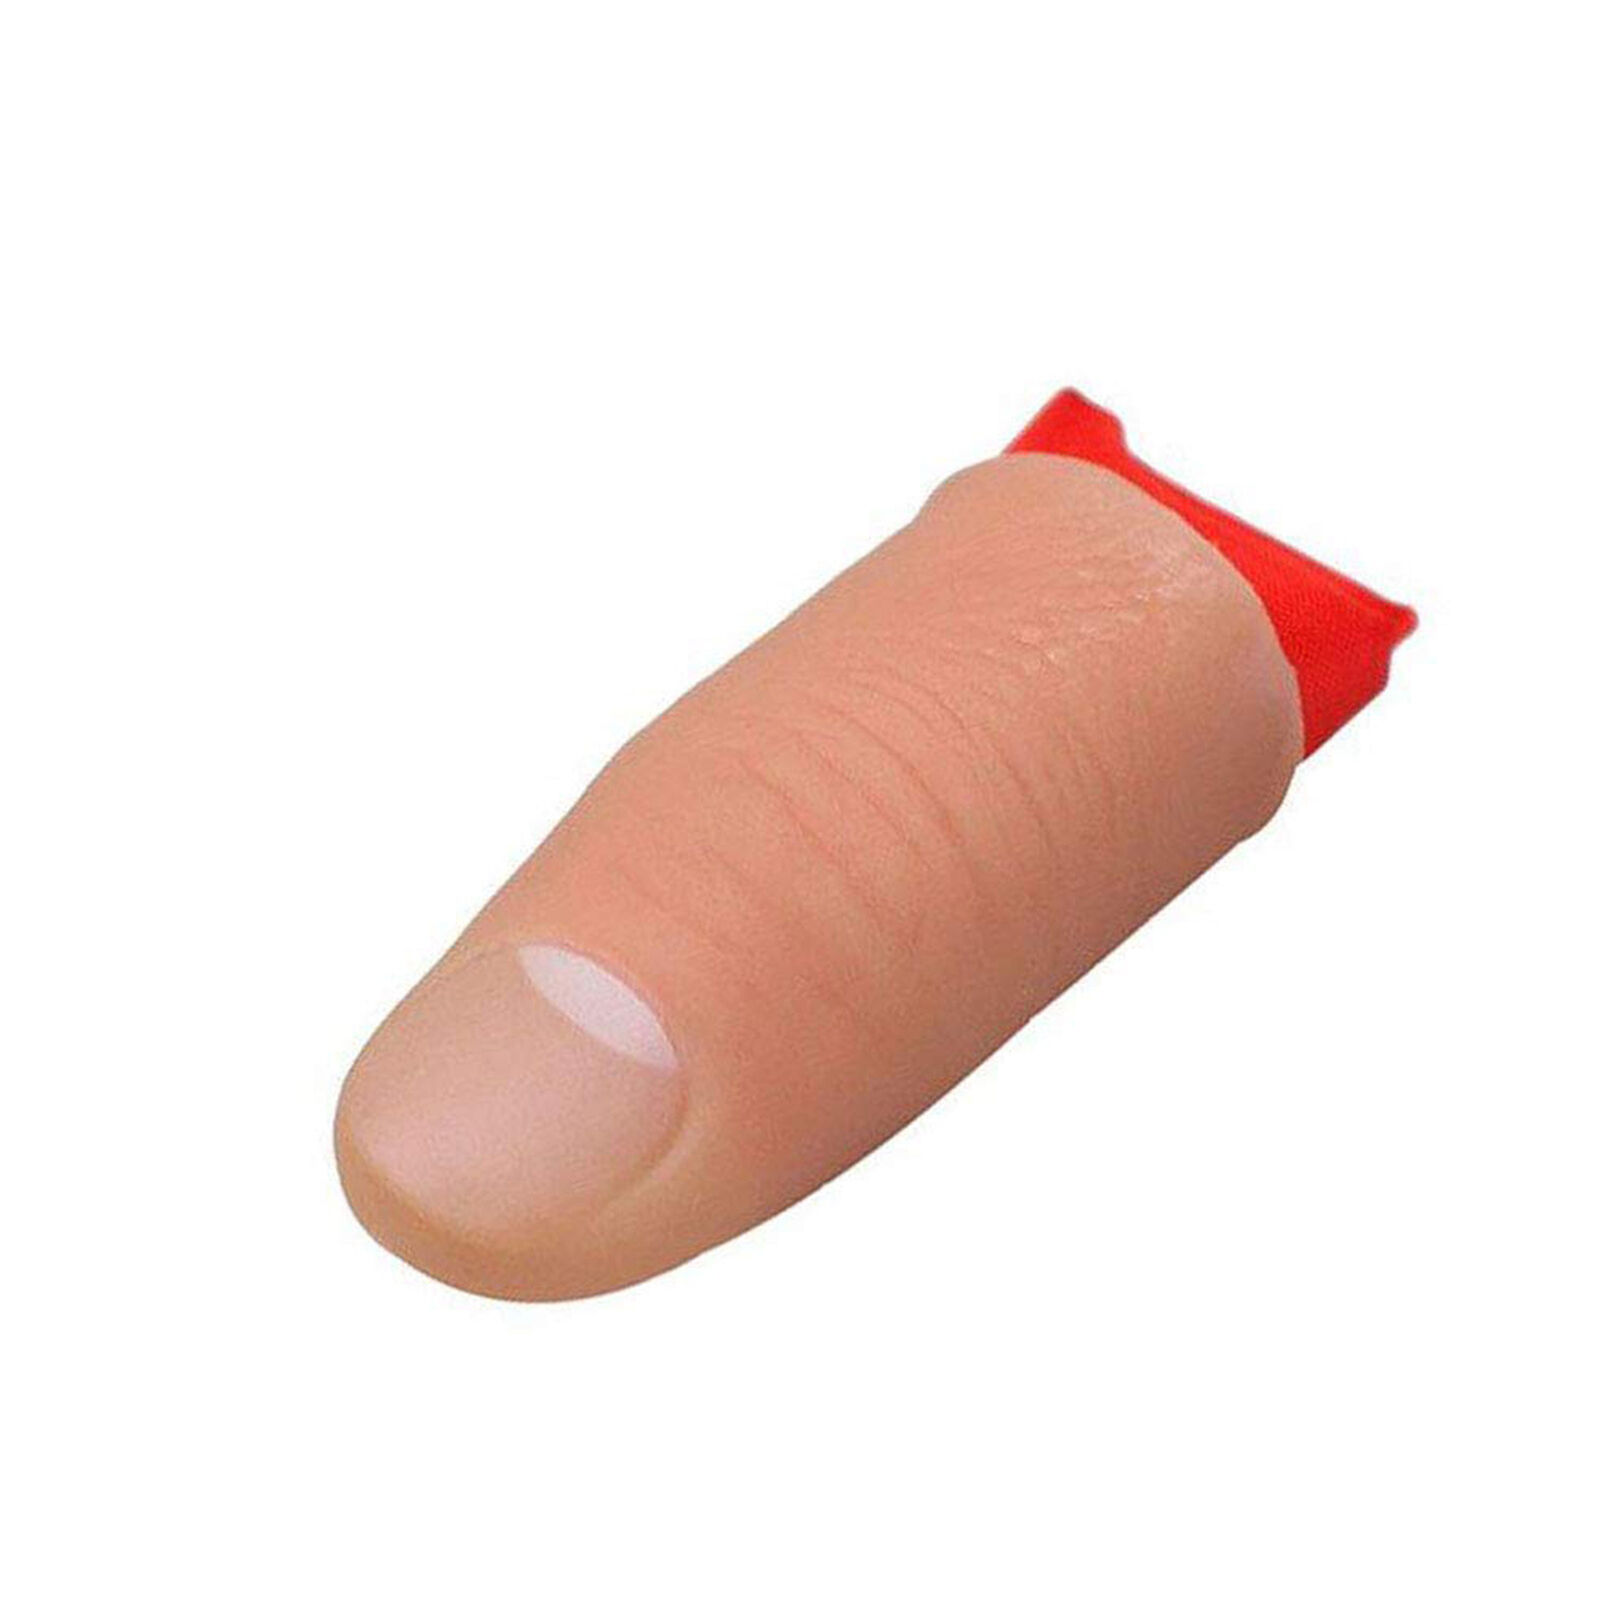 5PCS Thumb Tip Finger Fake Trick Vinyl Fun Toy Joke Prank Props Vanish Red Silk